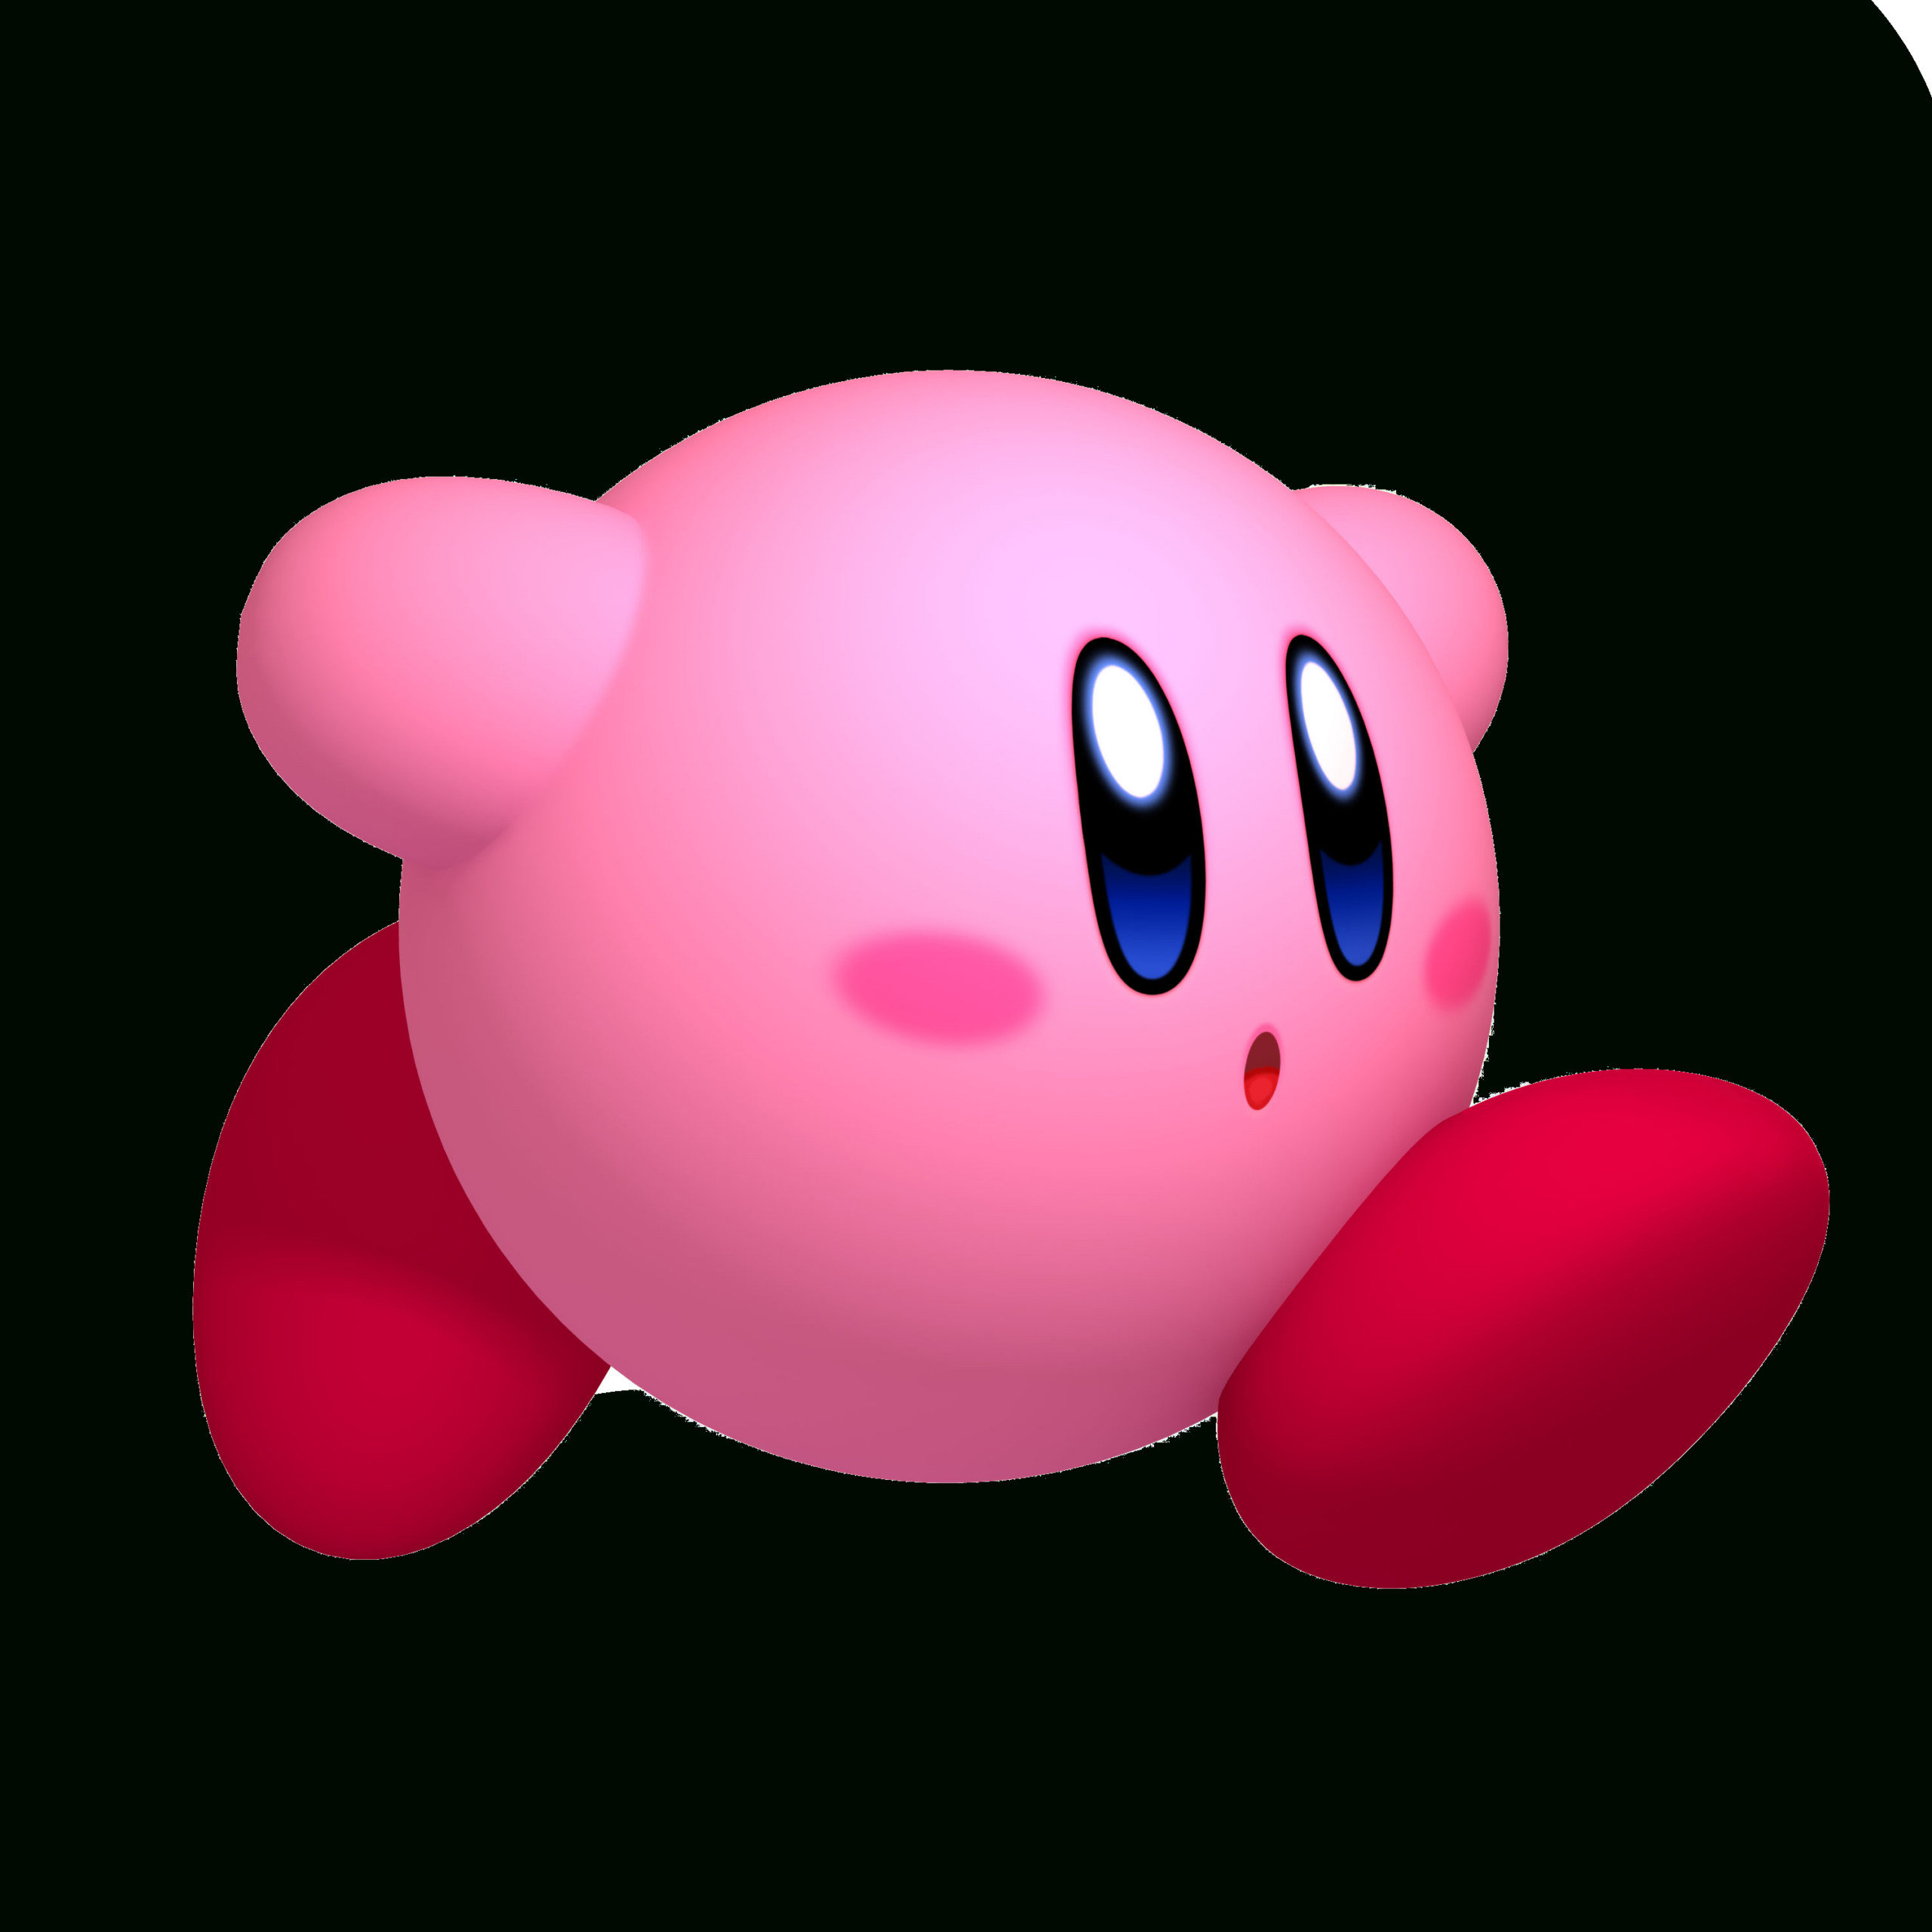 Dessins En Couleurs À Imprimer : Kirby, Numéro : 258848 intérieur Dessin A Imprimer Kirby